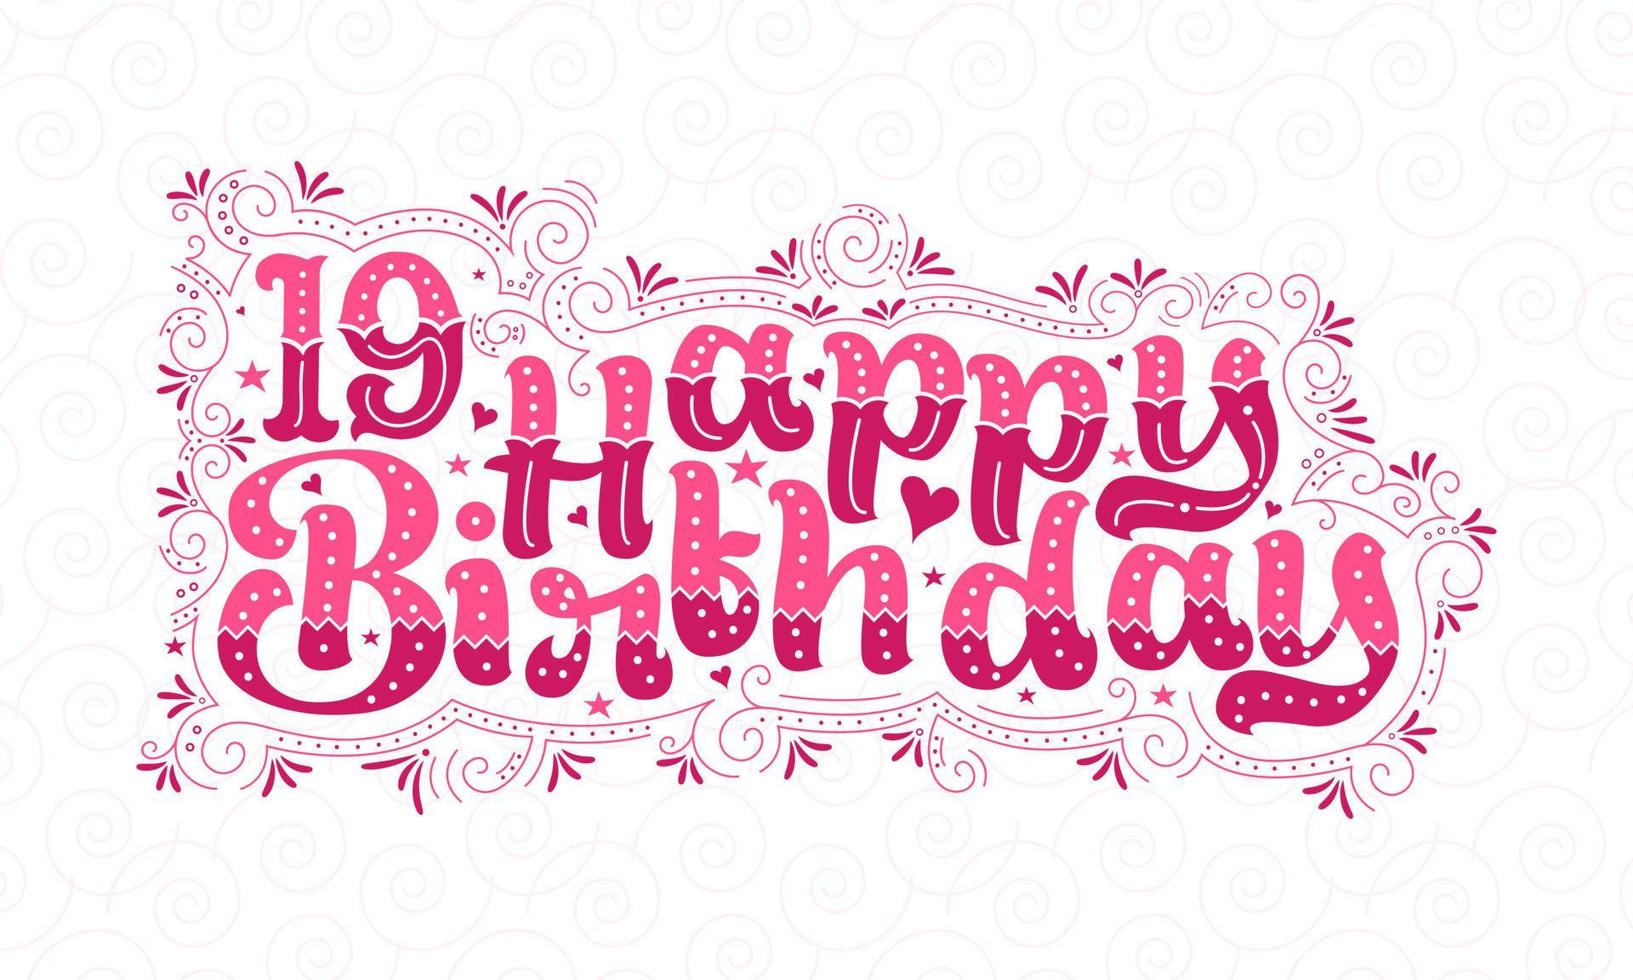 19° buon compleanno lettering, 19 anni compleanno bellissimo design tipografico con punti rosa, linee e foglie. vettore